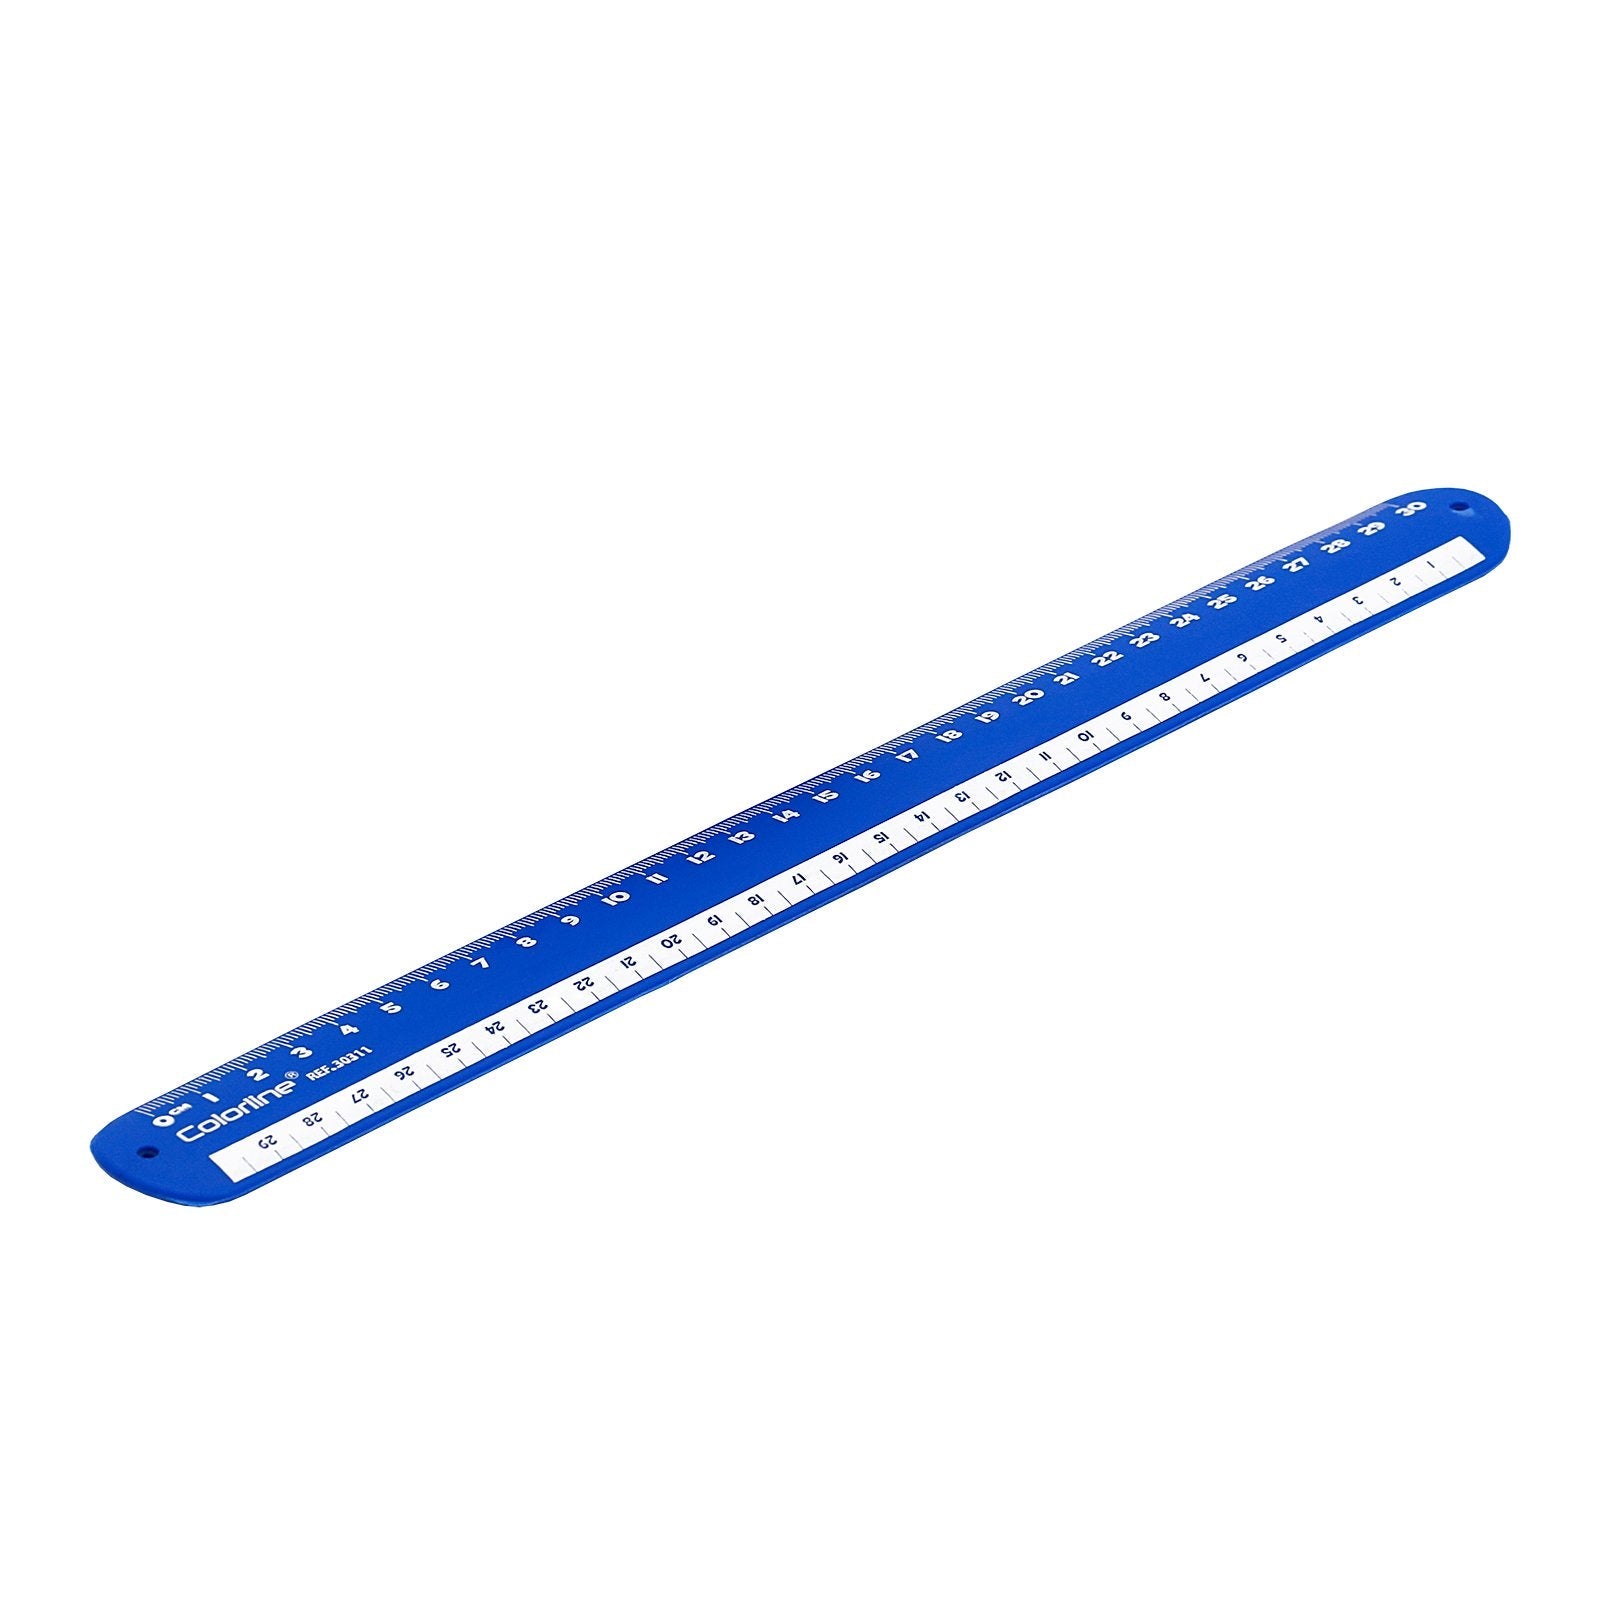 Colorline Rulómetro - Regla Enrollable 30 cm en Silicona. Acabado Soft-Touch. Azul Oscuro